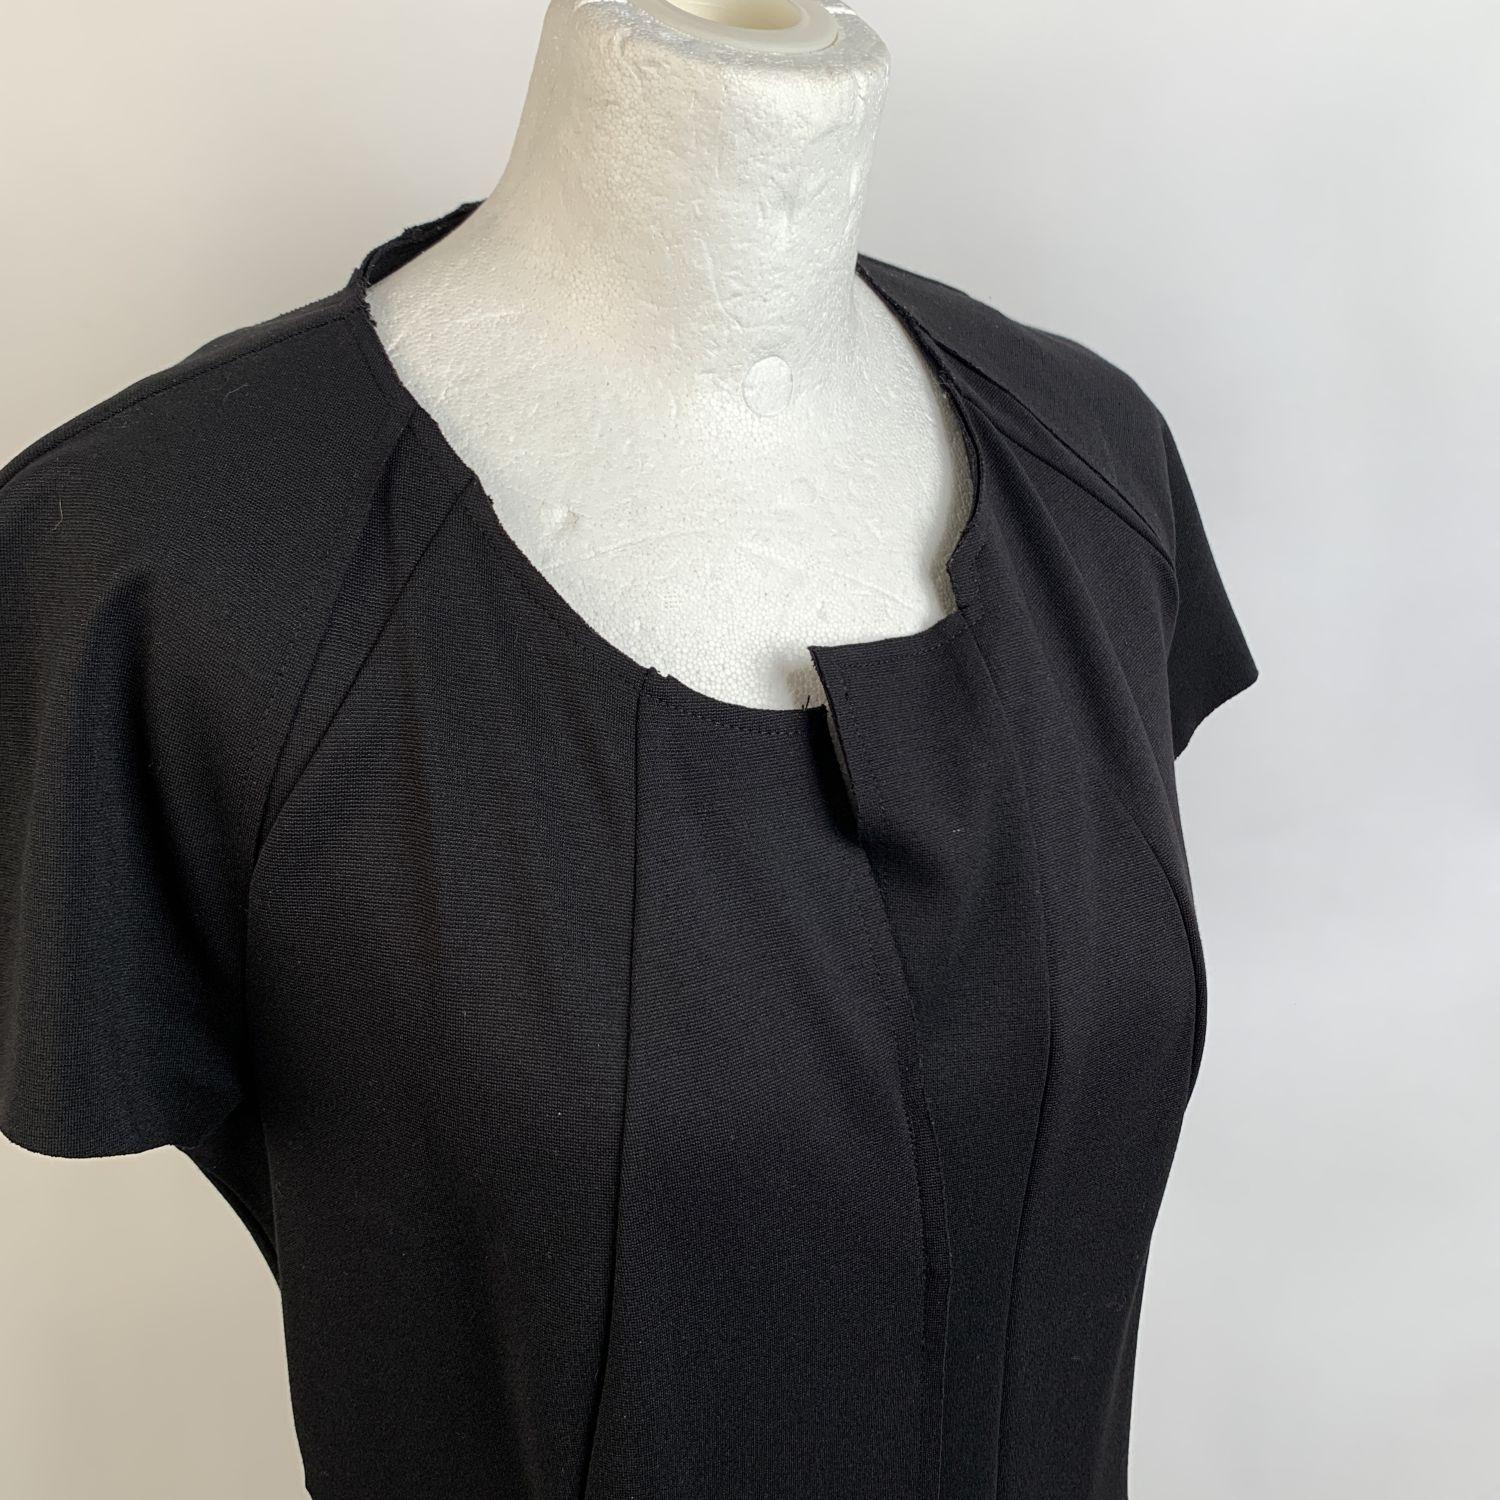 Jil Sander Black Sheath Short Sleeve Dress Size 40 1